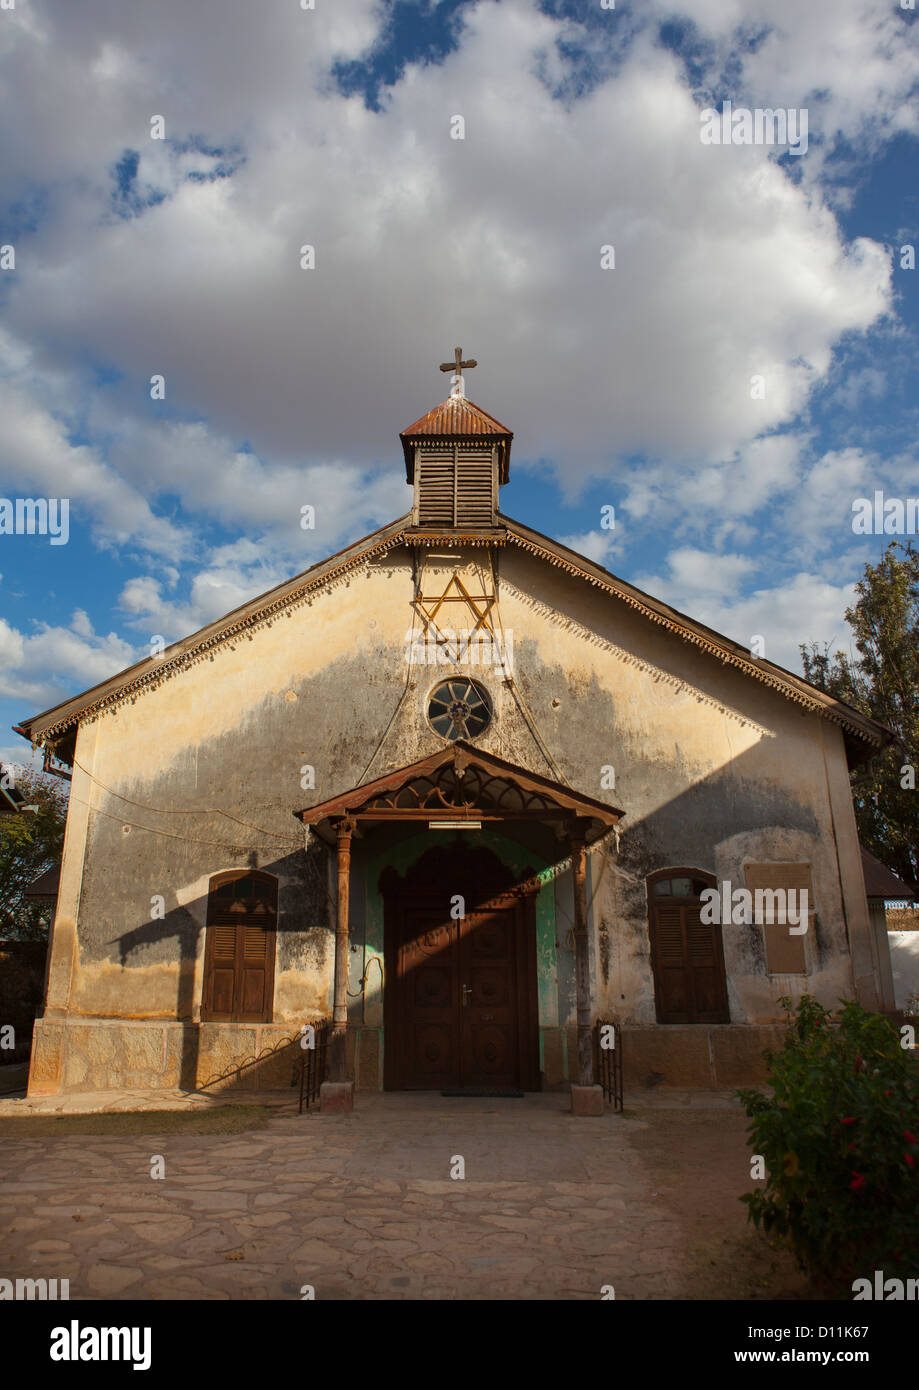 Alte Kirche mit Davidstern auf der Vorderseite und Kreuz auf dem Dach, Harar, Äthiopien Stockfoto